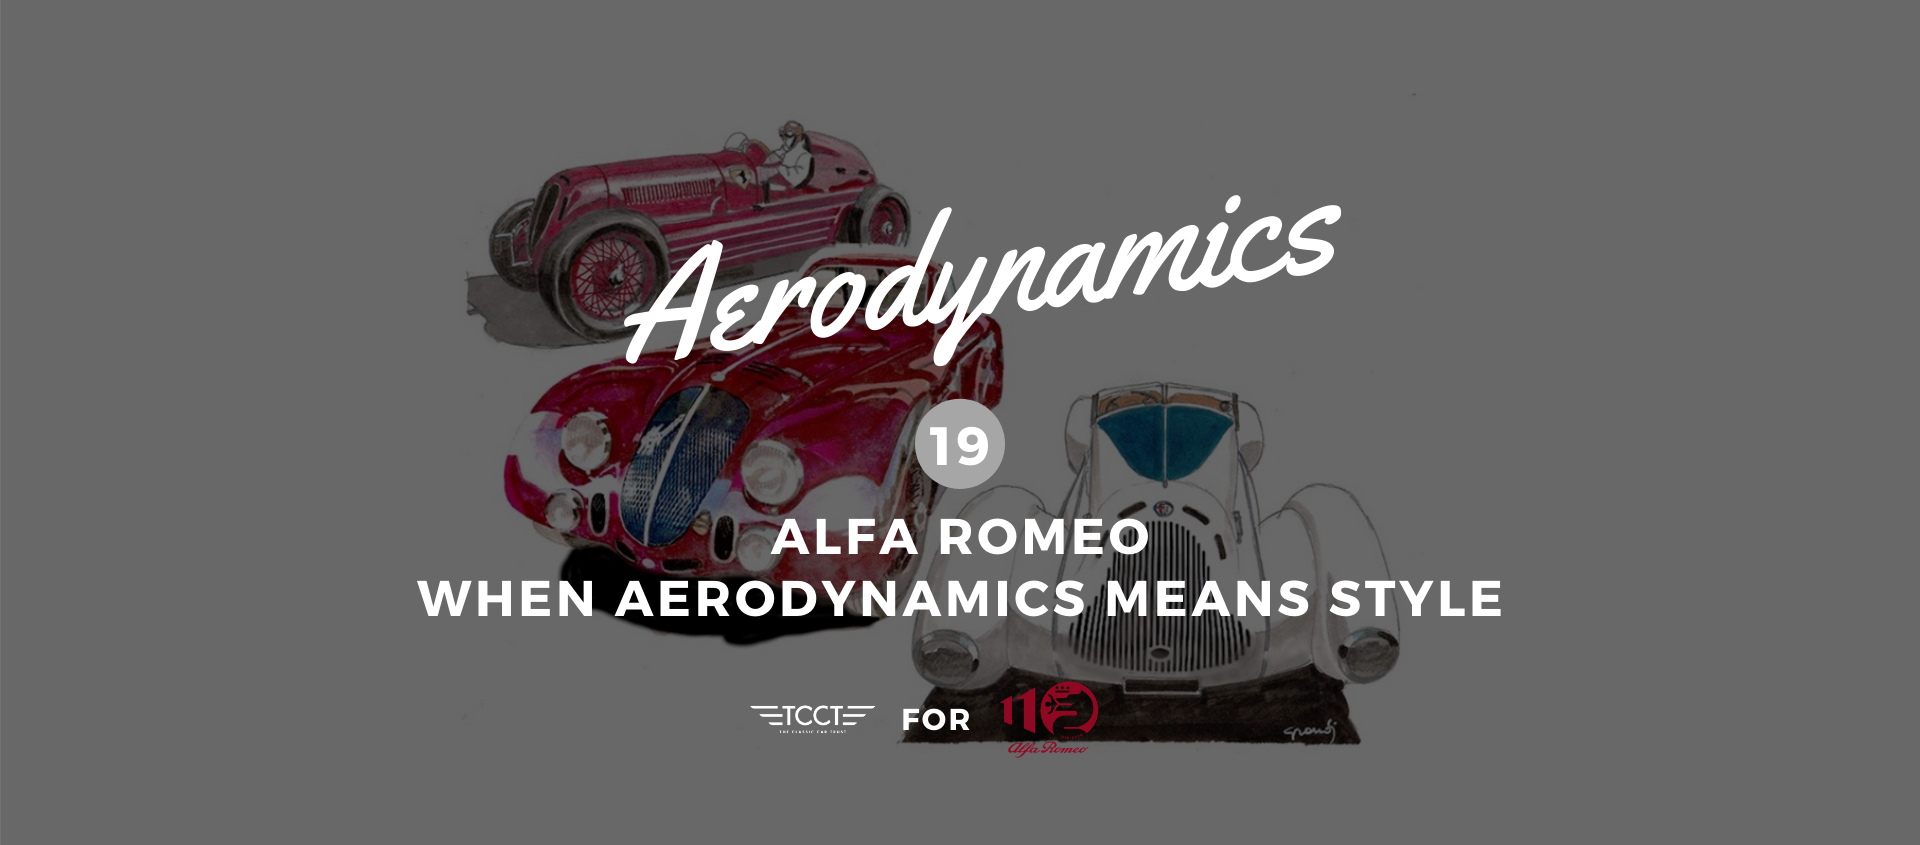 Alfa Romeo. When aerodynamics means style